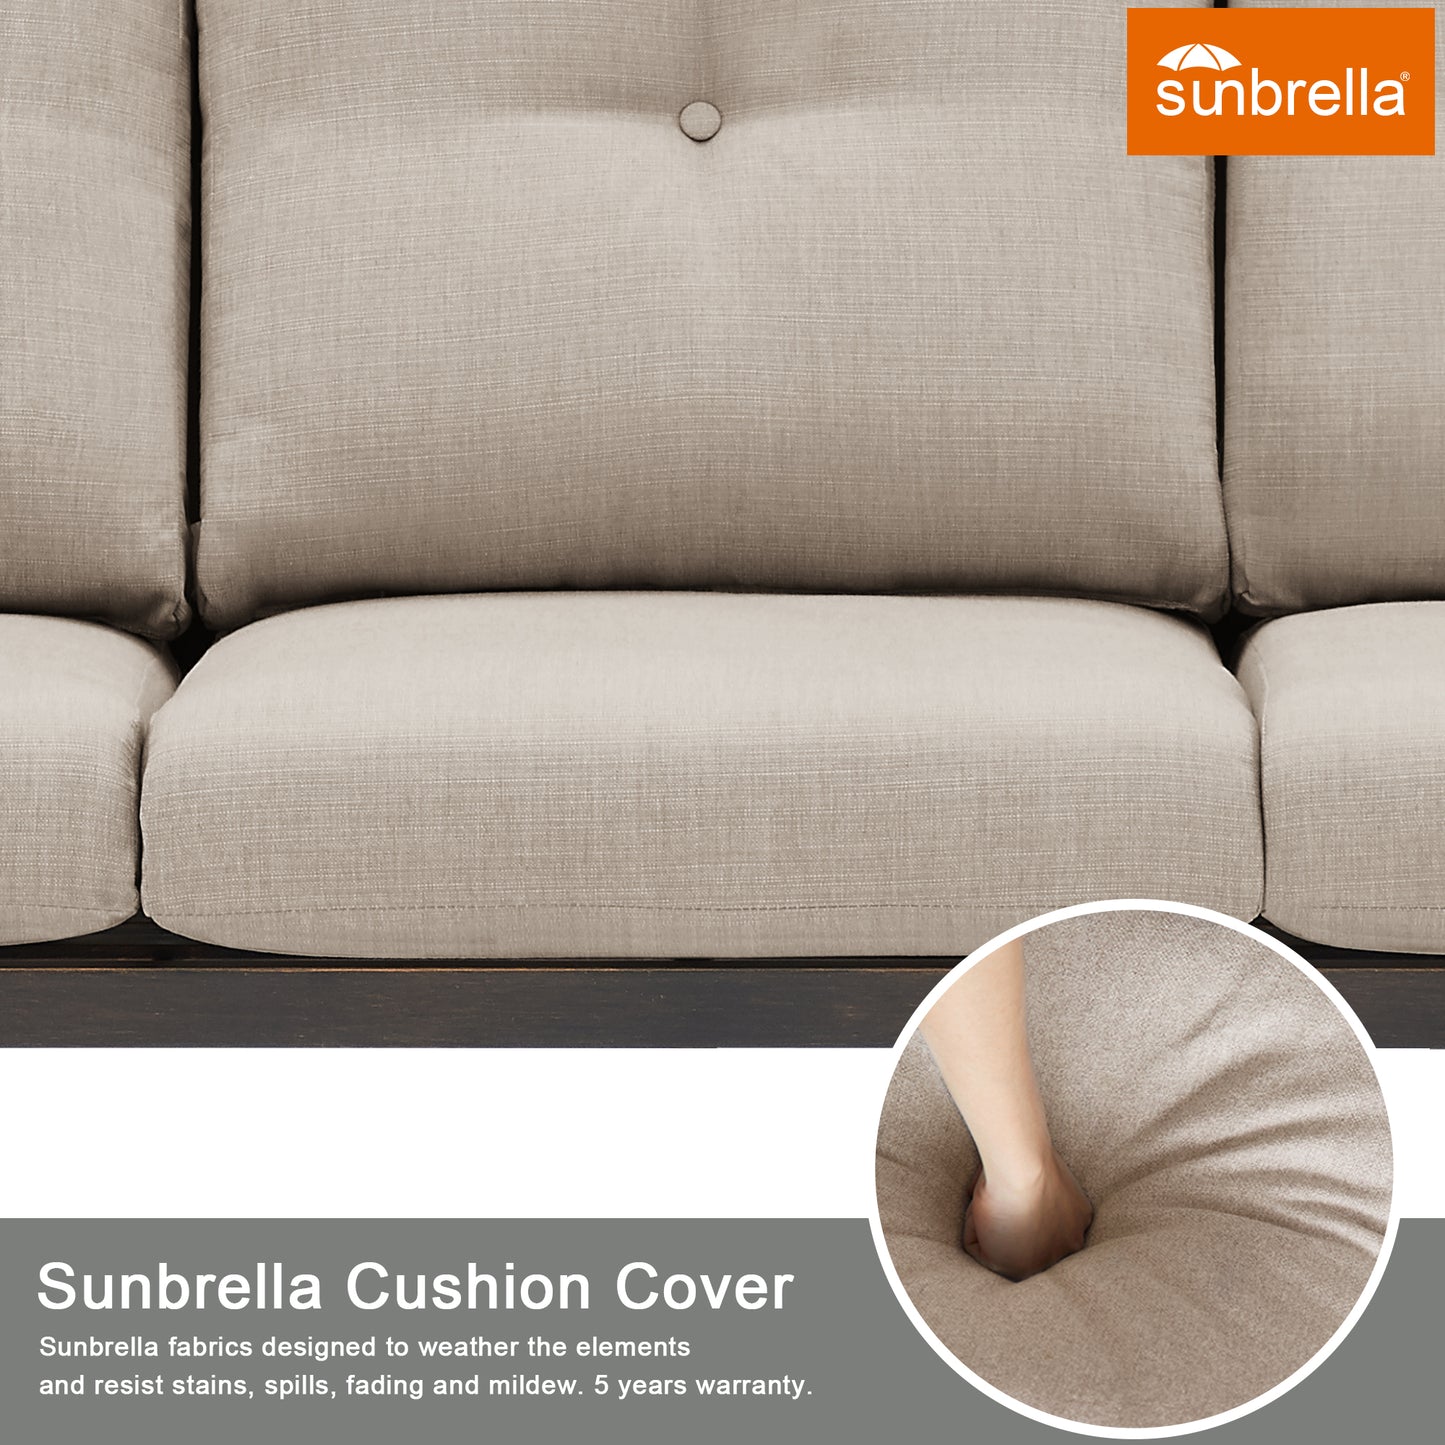 Outdoor/Indoor Aluminum 3-Seater Patio Conversation Sofa with Sunbrella Cushions